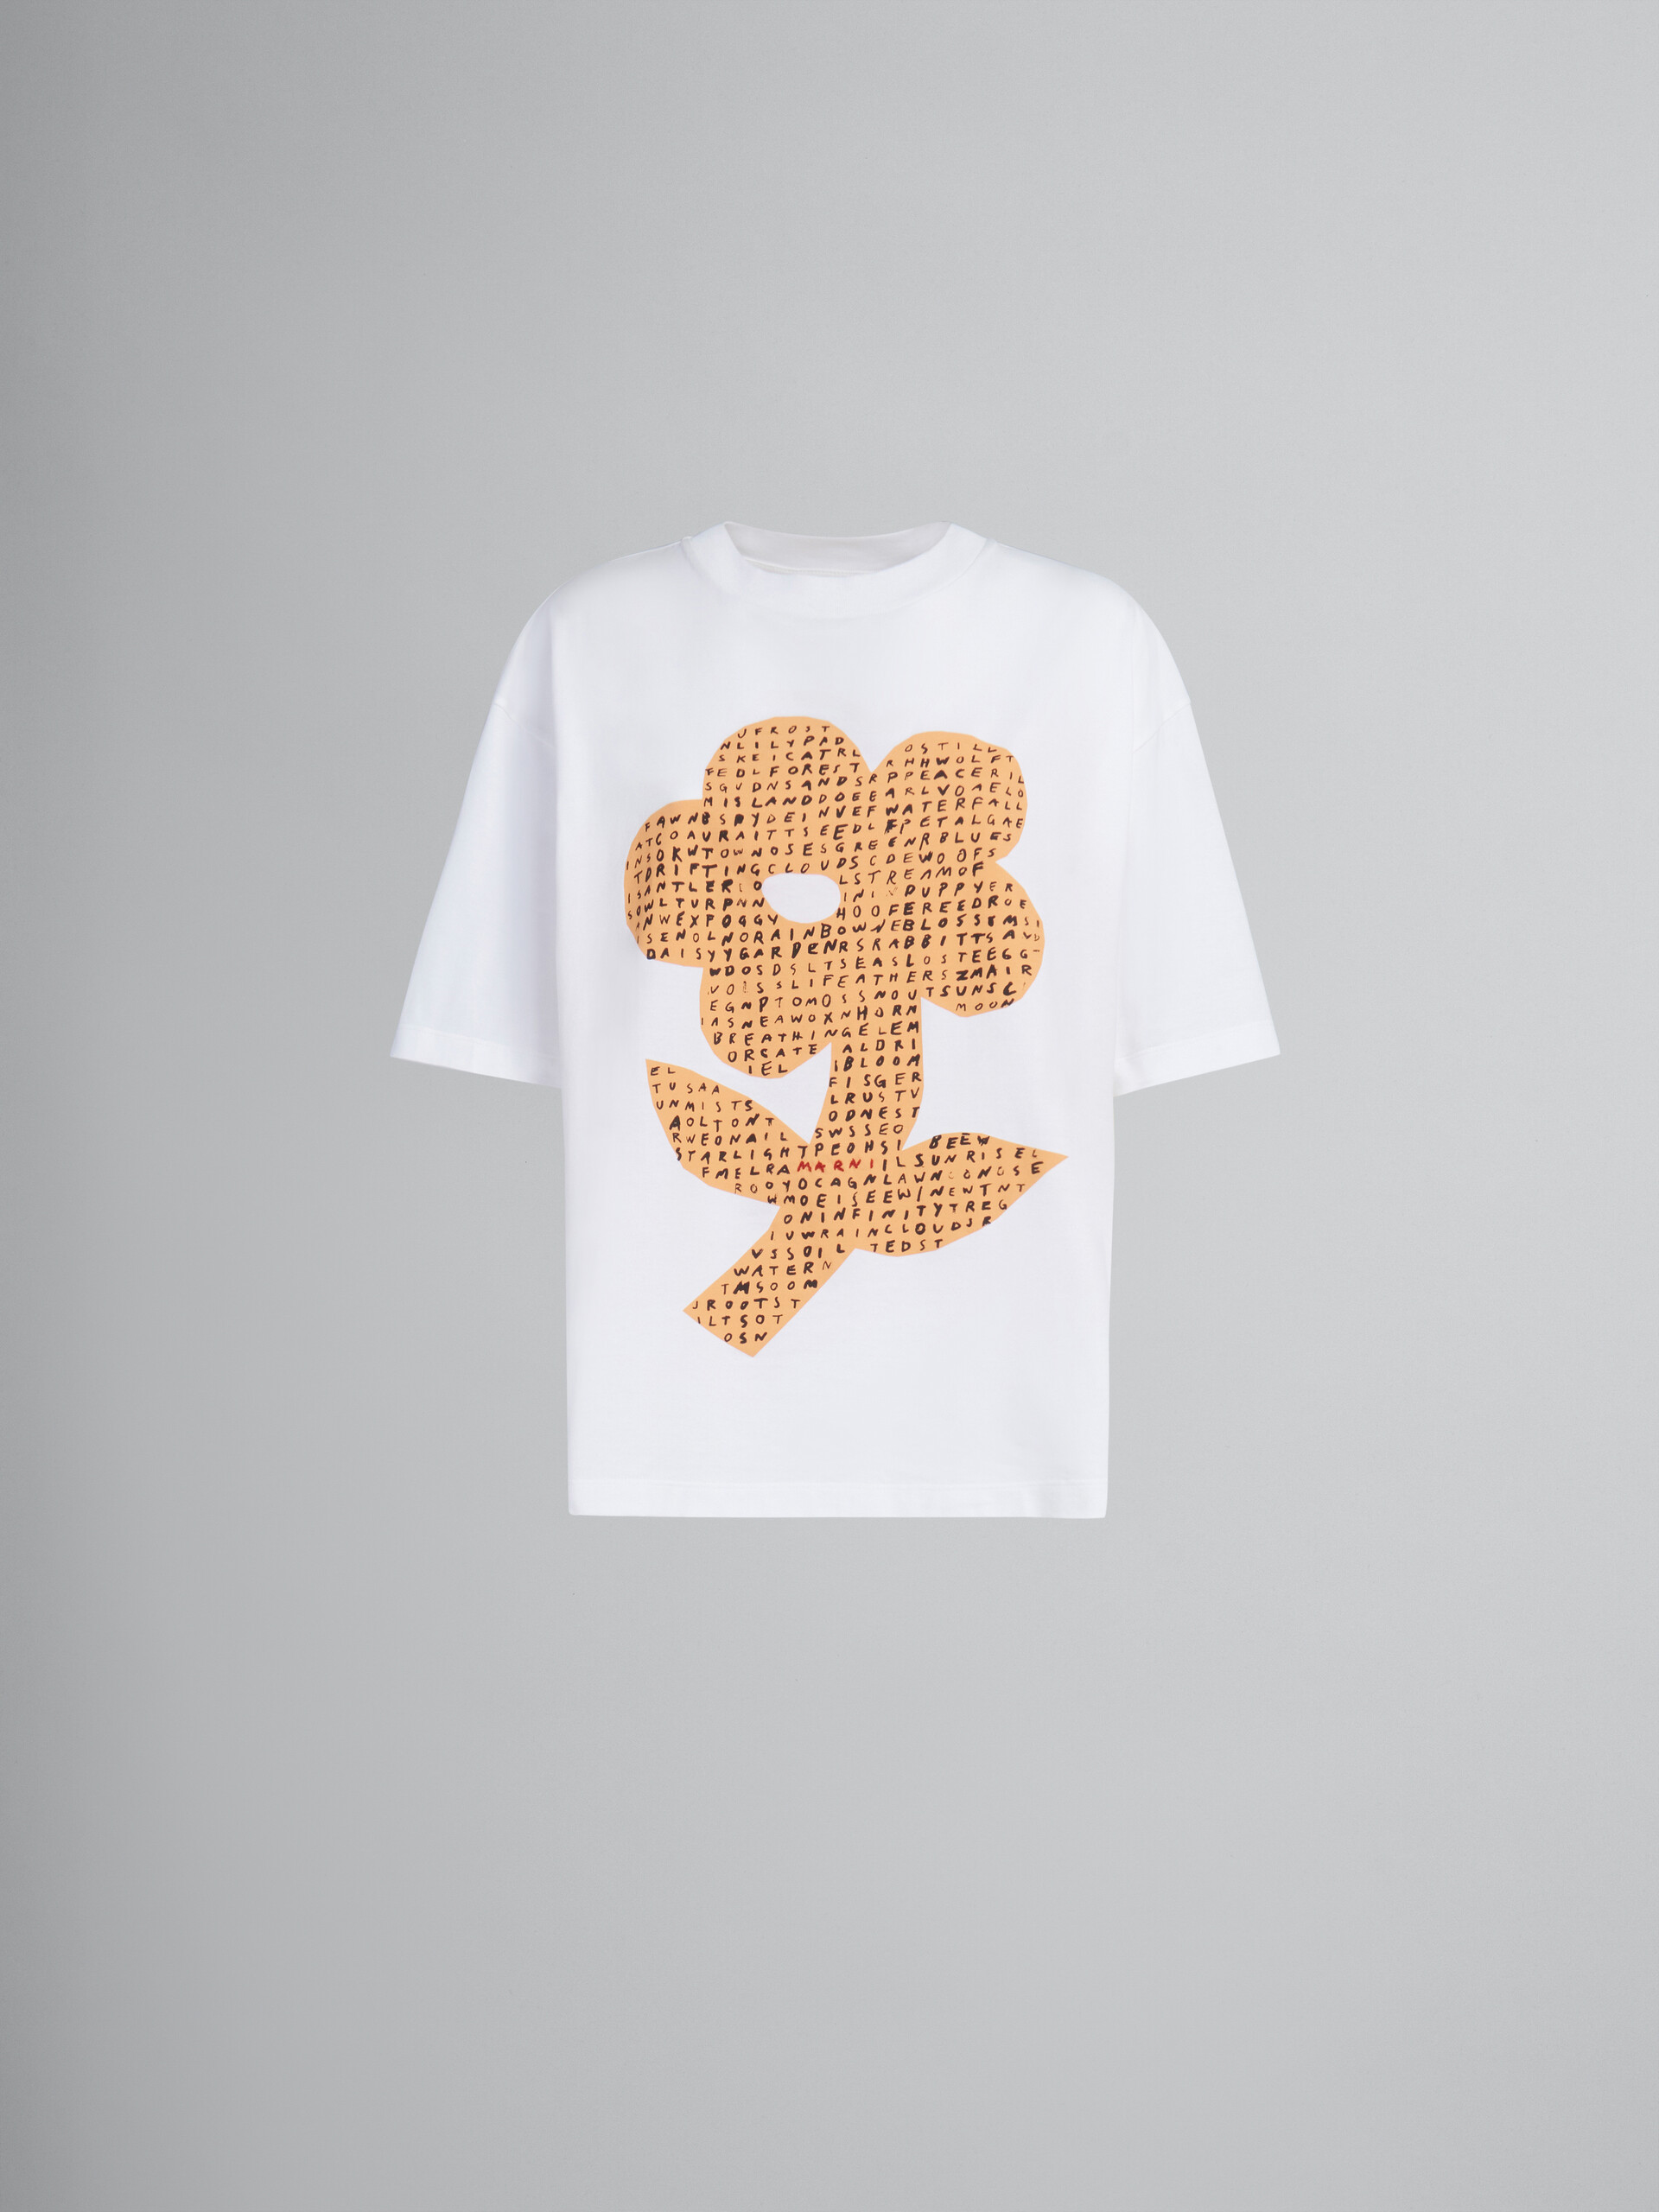 T-shirt en coton biologique blanc avec imprimé fleur et mots mêlés - T-shirts - Image 1